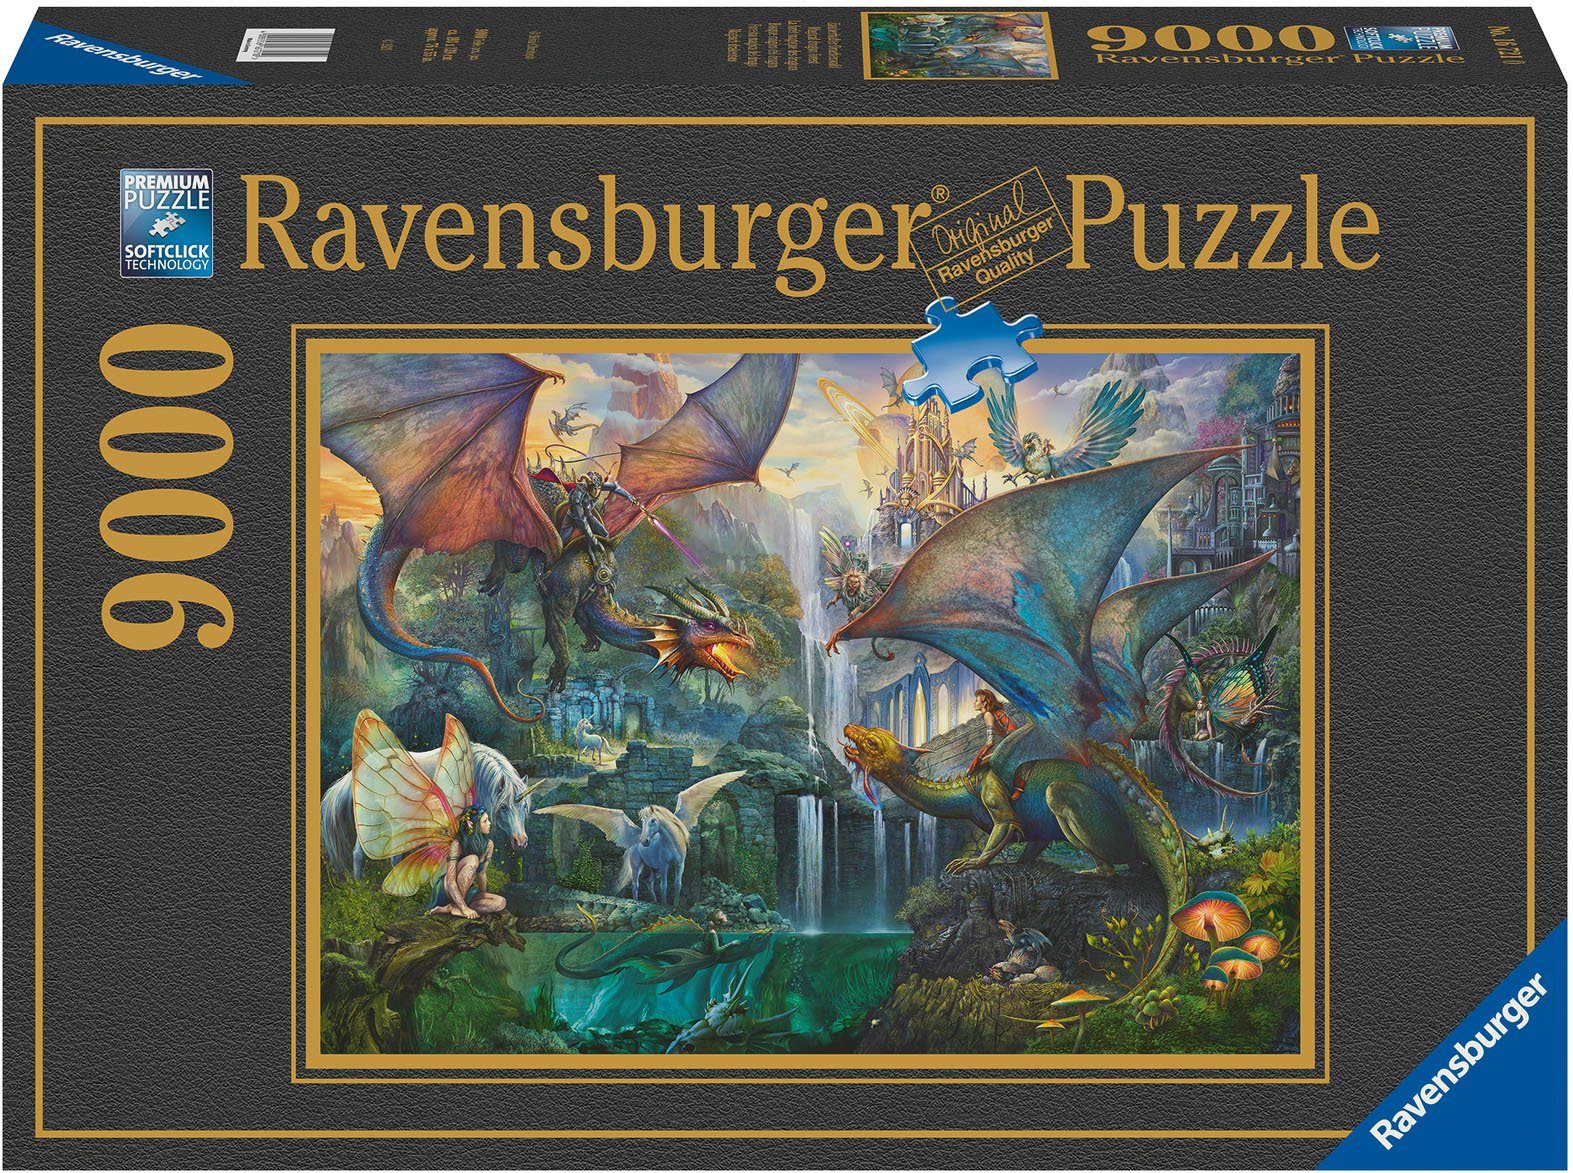 Ravensburger Puzzle Zauberhafter Drachenwald, 9000 Puzzleteile, Made in Germany, FSC® - schützt Wald - weltweit